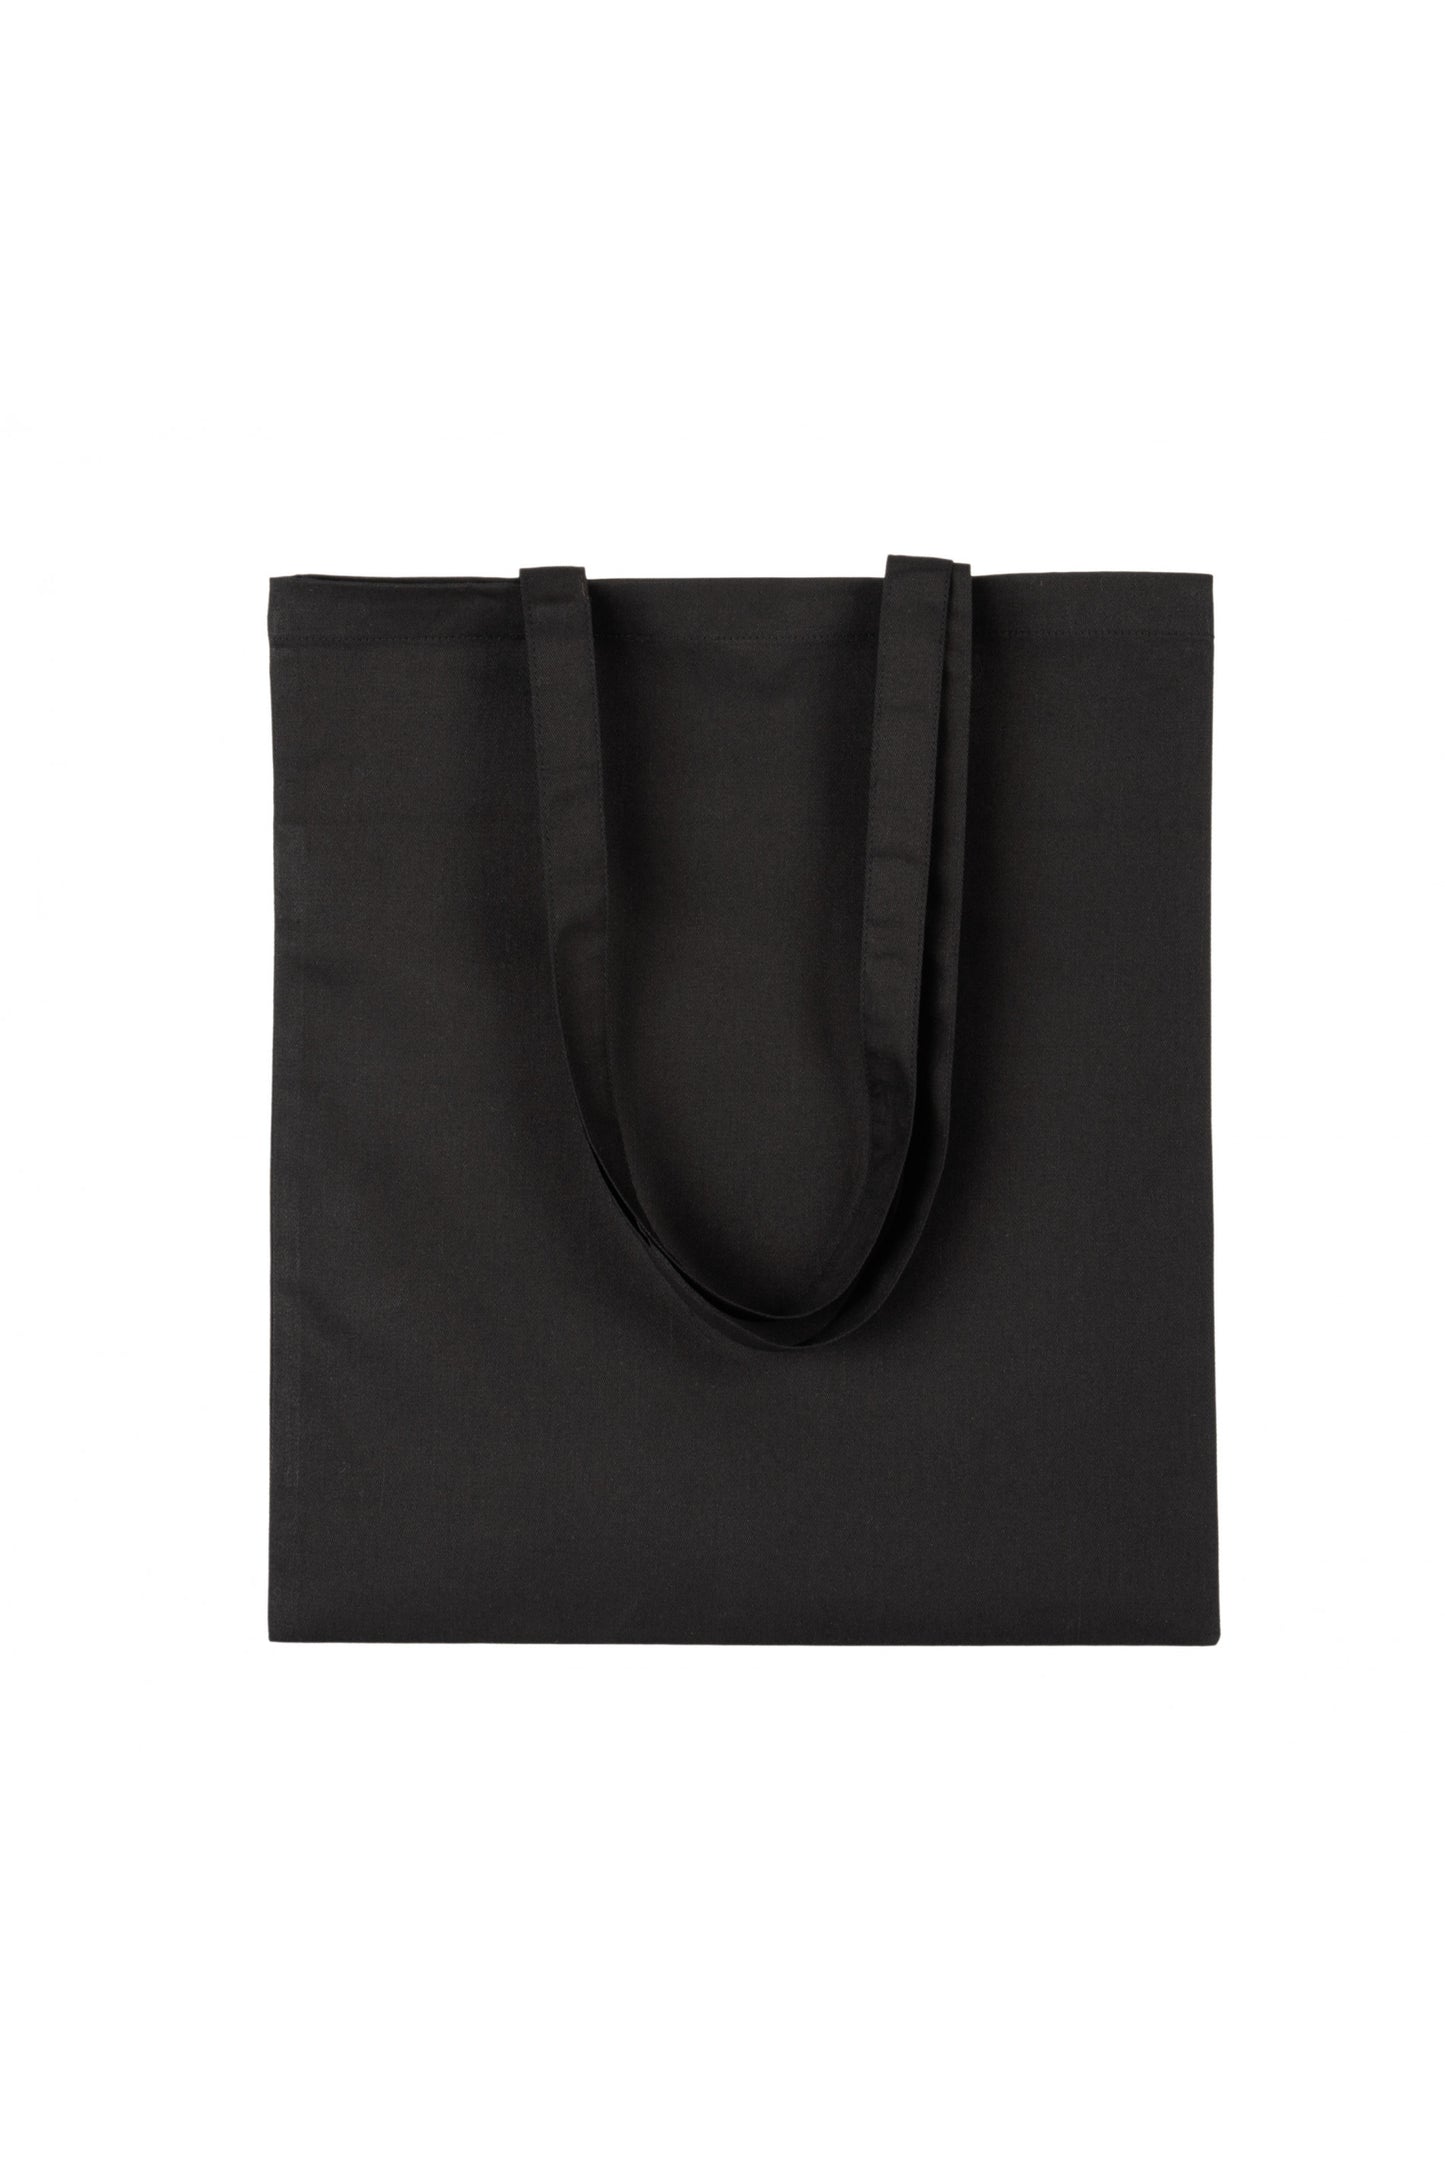 A New Era Tote Bag Black